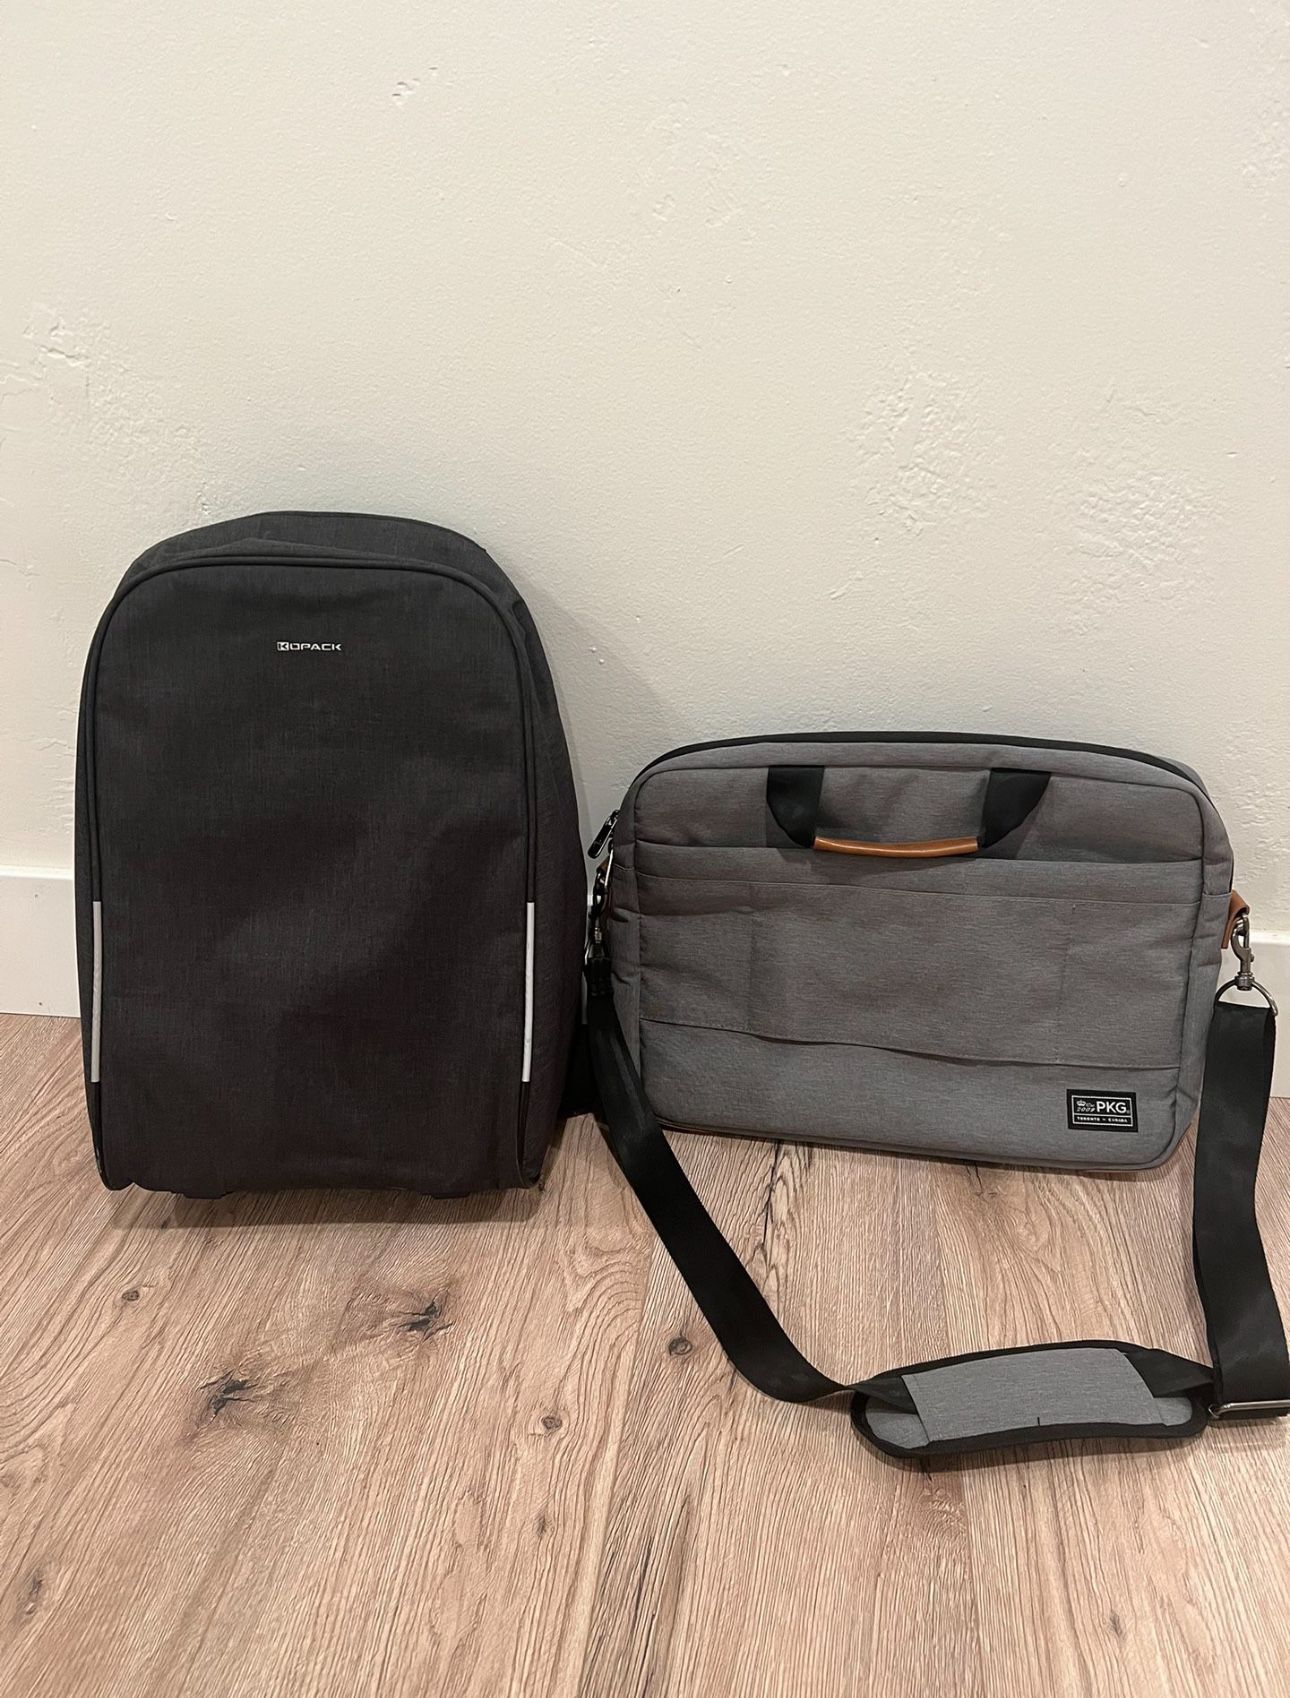 PKG Laptop Case And Kopack Backpack 